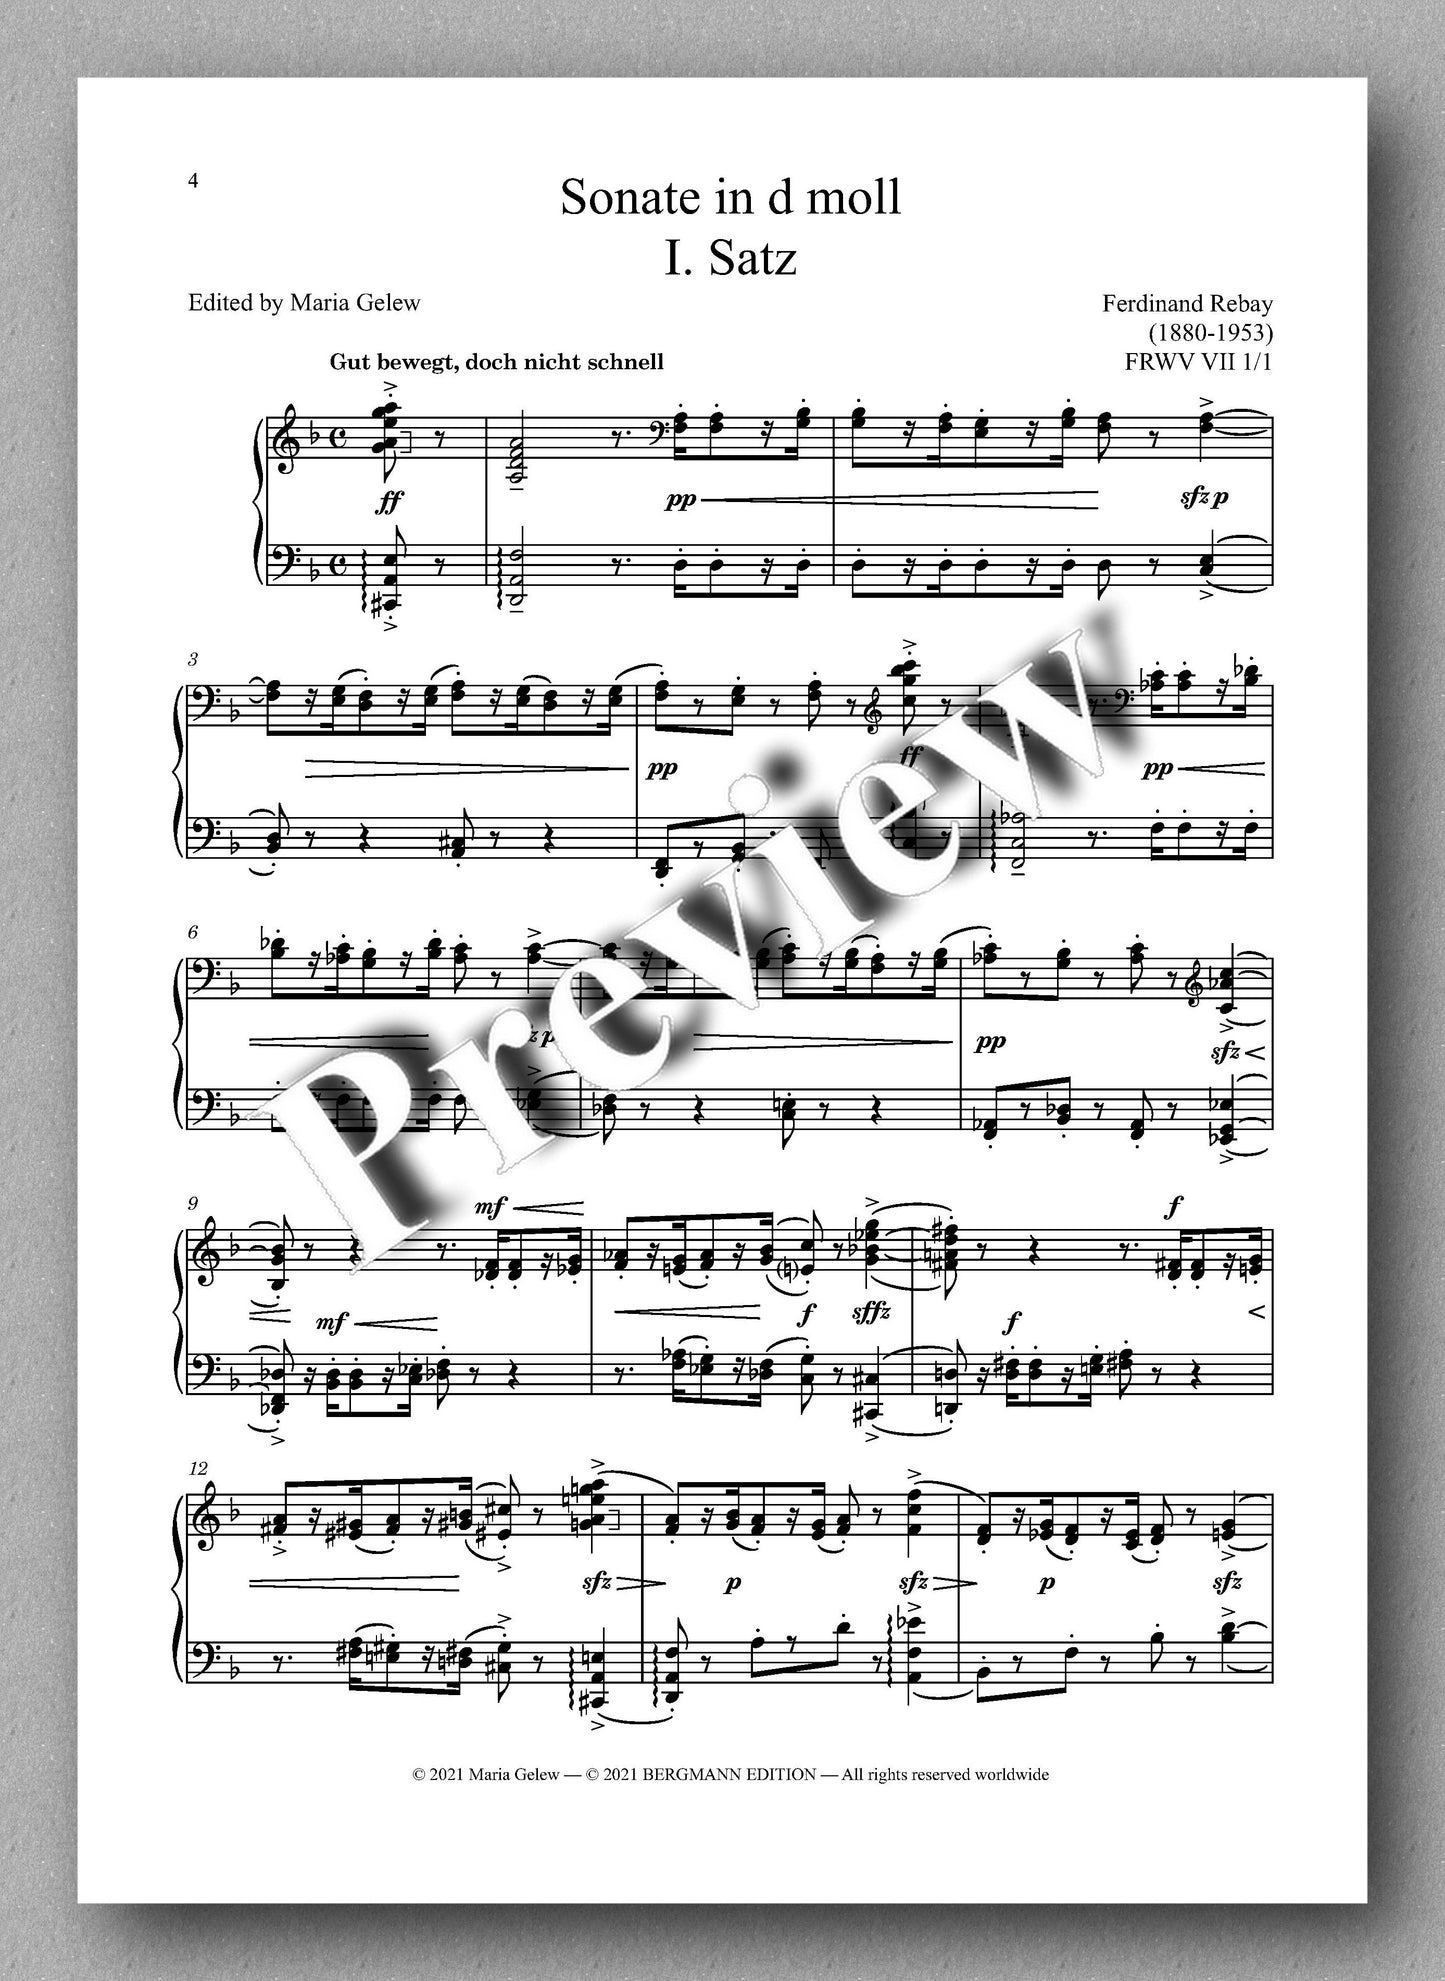 Rebay, Klavier No. 17, Sonate in d moll - music score 1